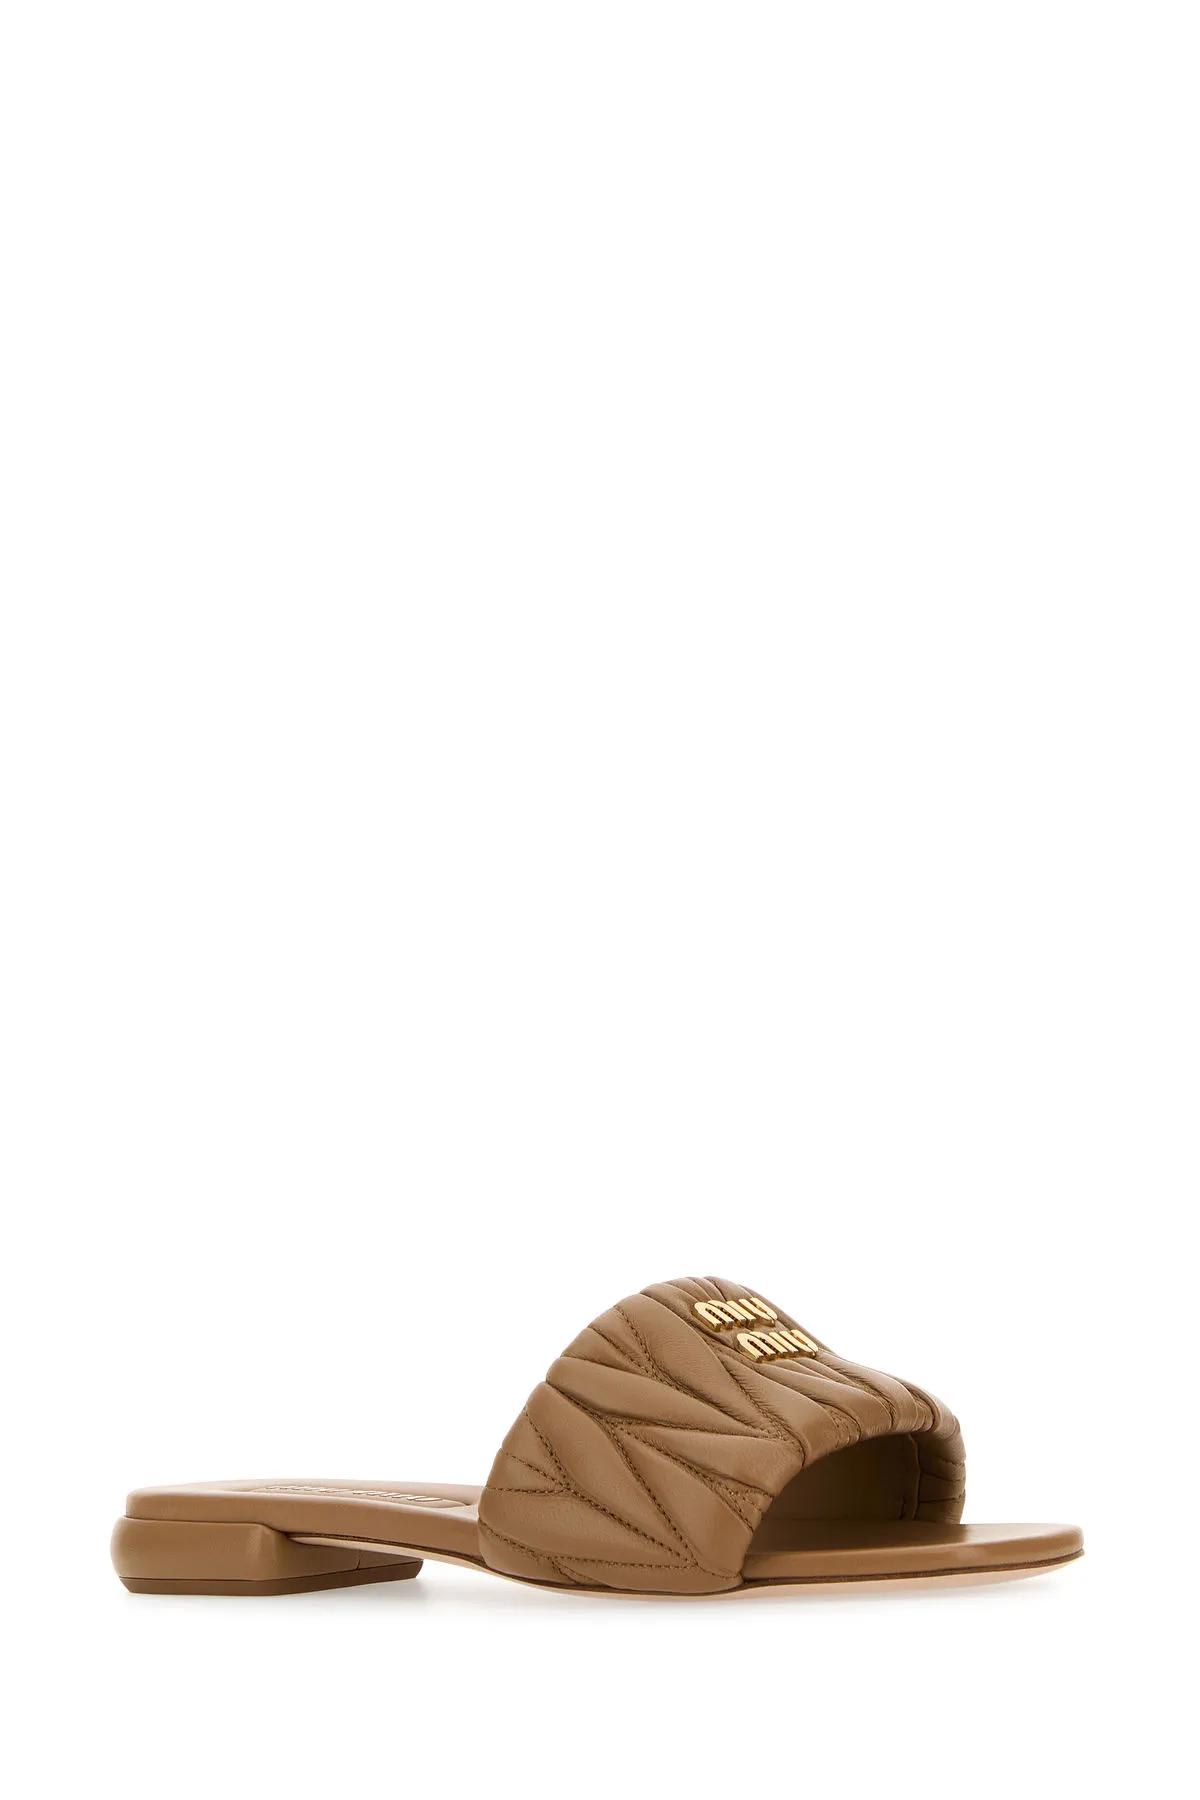 Shop Miu Miu Caramel Nappa Leather Slippers In Caramello